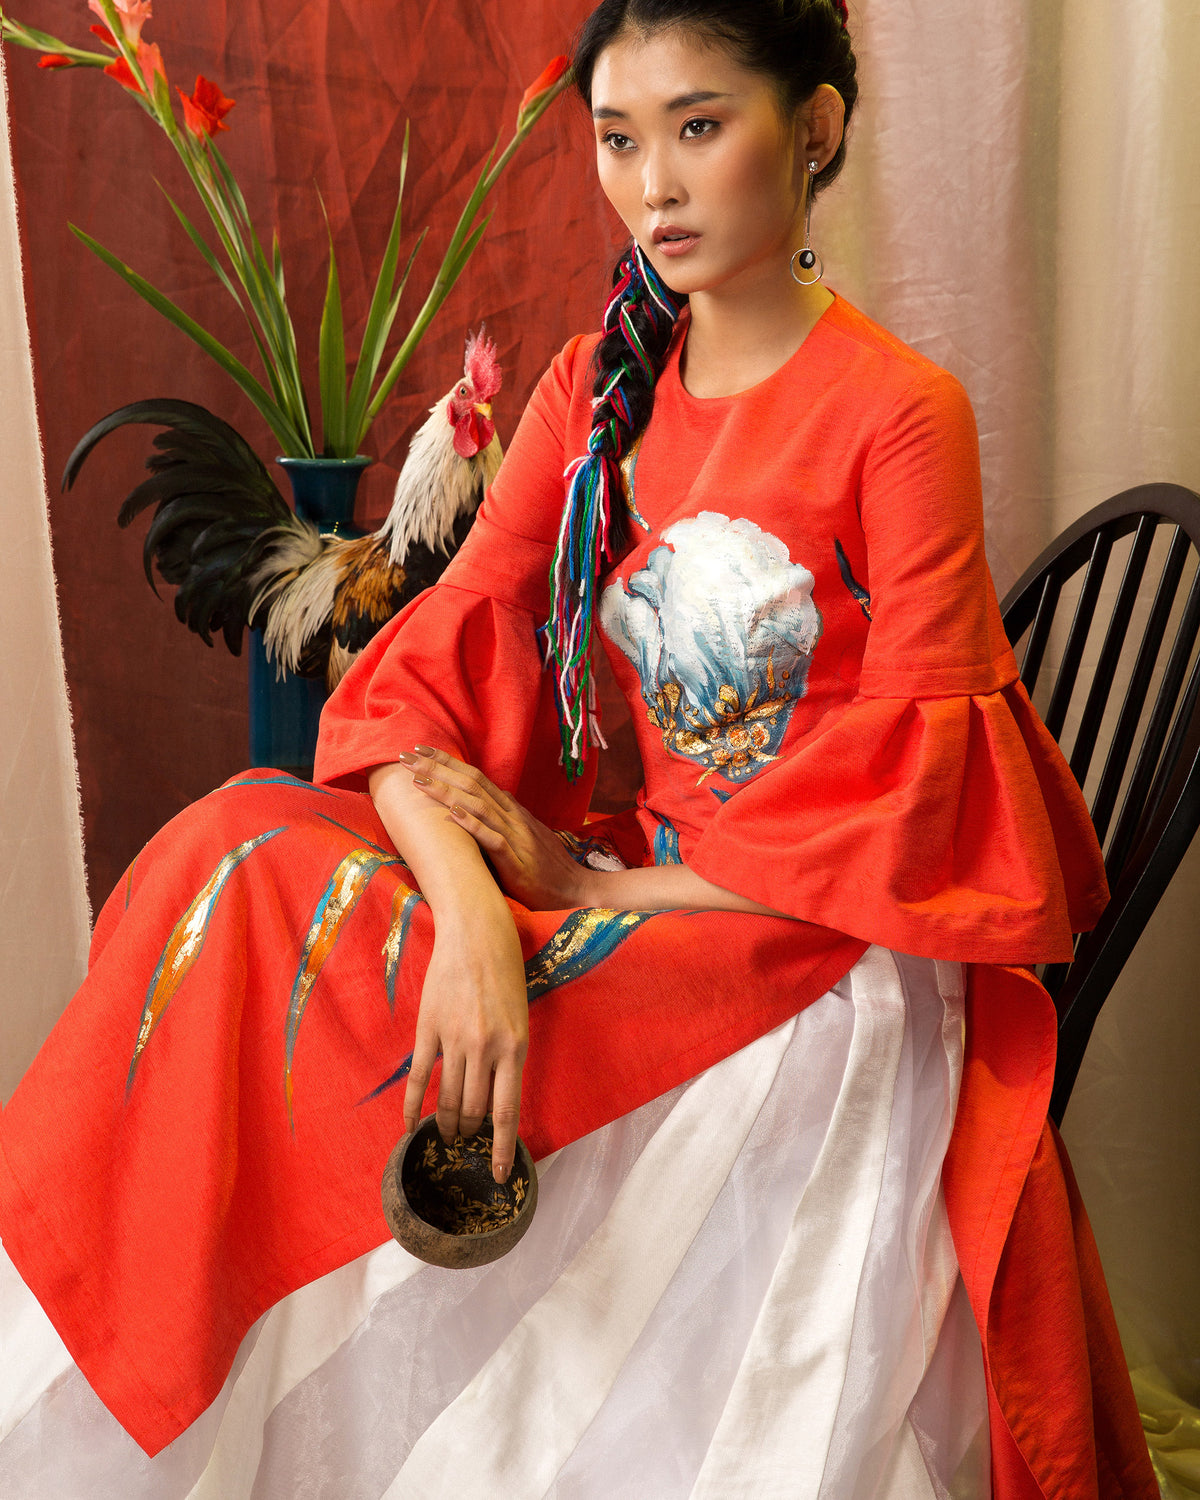 Aodai contemporaneo in taffettà arancione dipinto a fiori